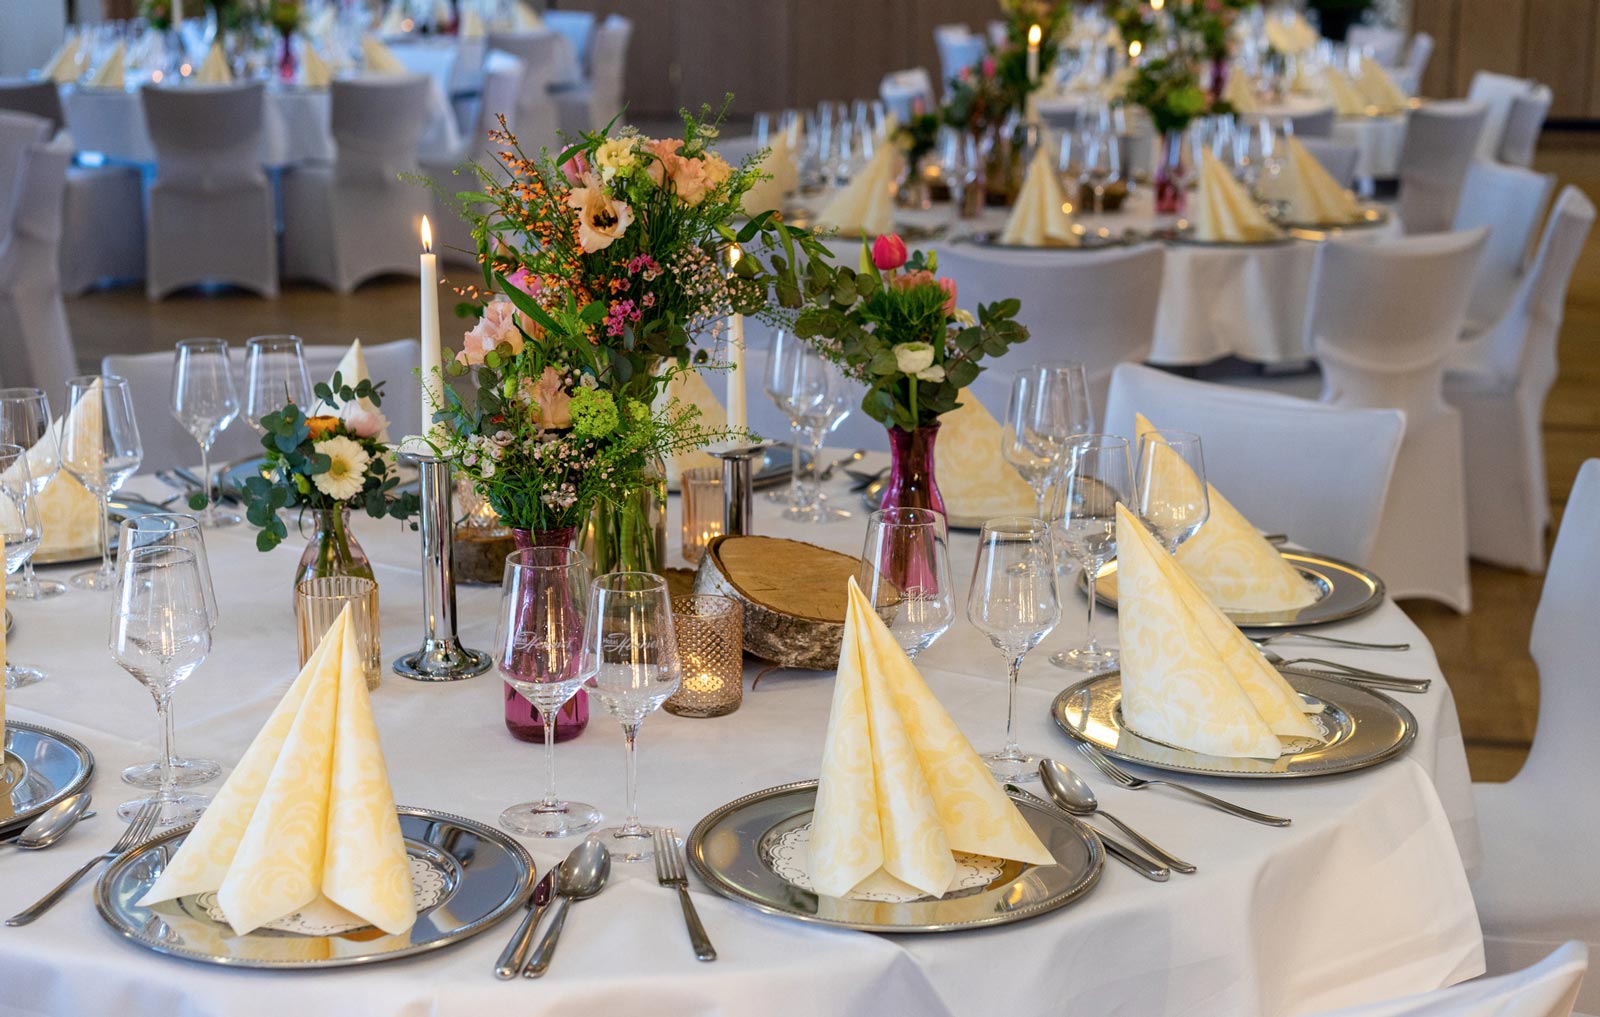 Gedeckter Hochzeitstisch mit silber Tellern und gelben Servietten im Hotel Hennies Landhaus in Isernhagen / Hannover.